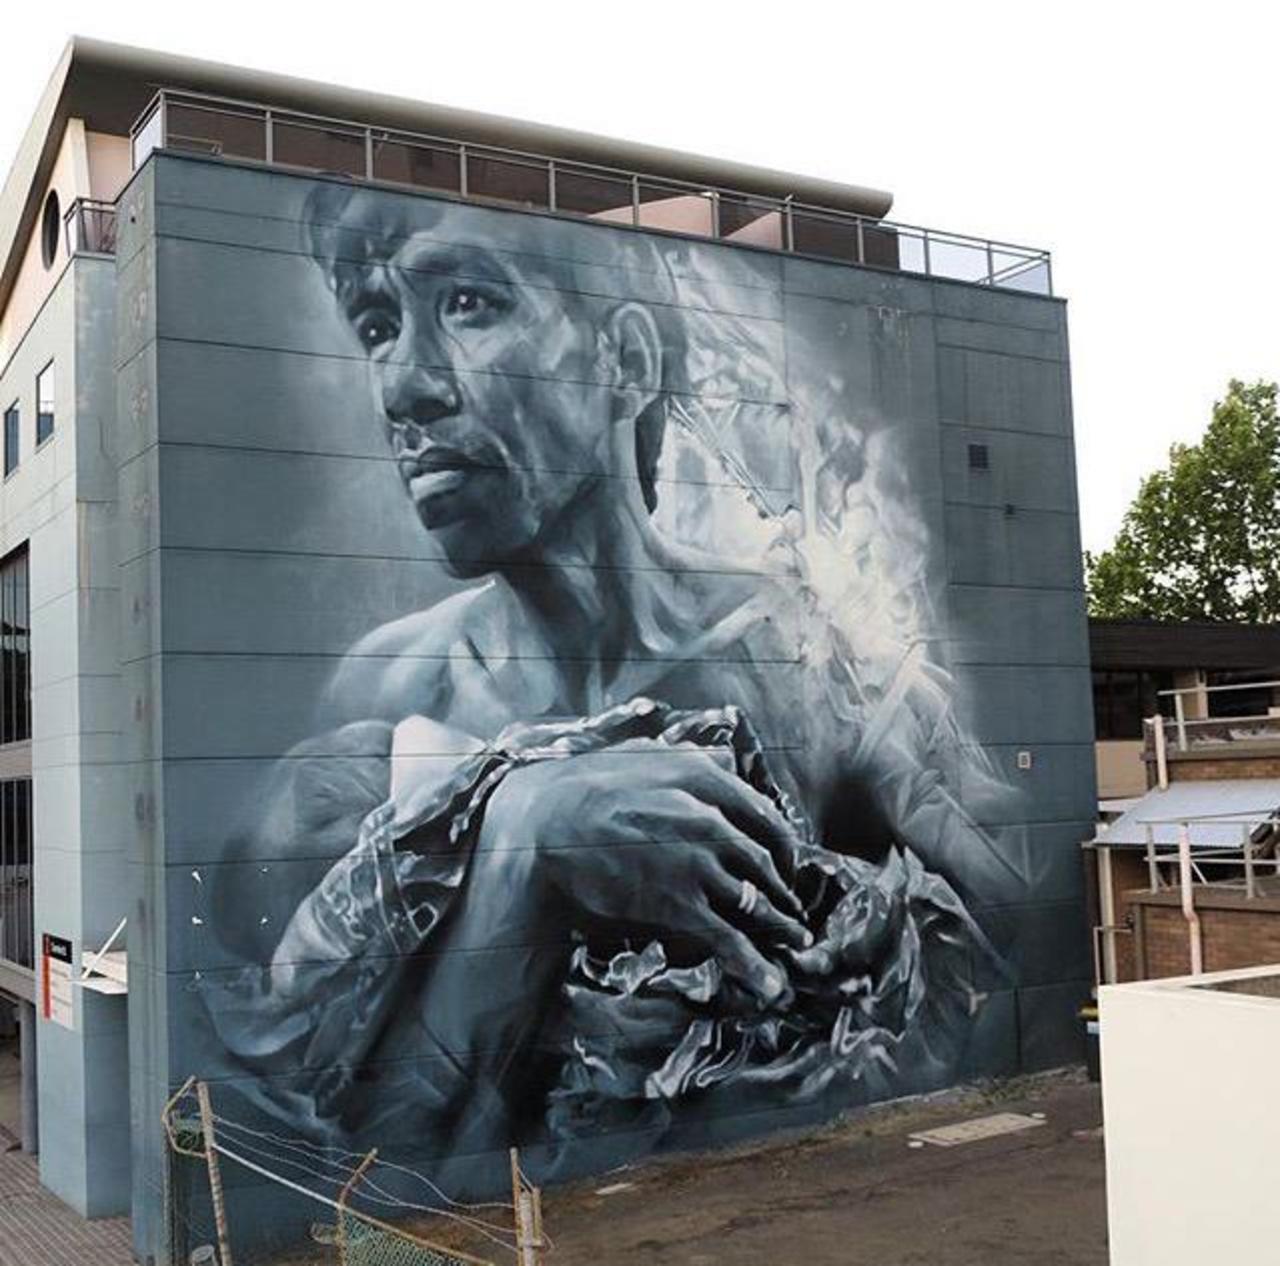 RT belilac "New Street Art by Guido Van Helten in Wollongong Australia 

#art #graffiti #mural #streetart http://t.co/tcHScoLTlj"